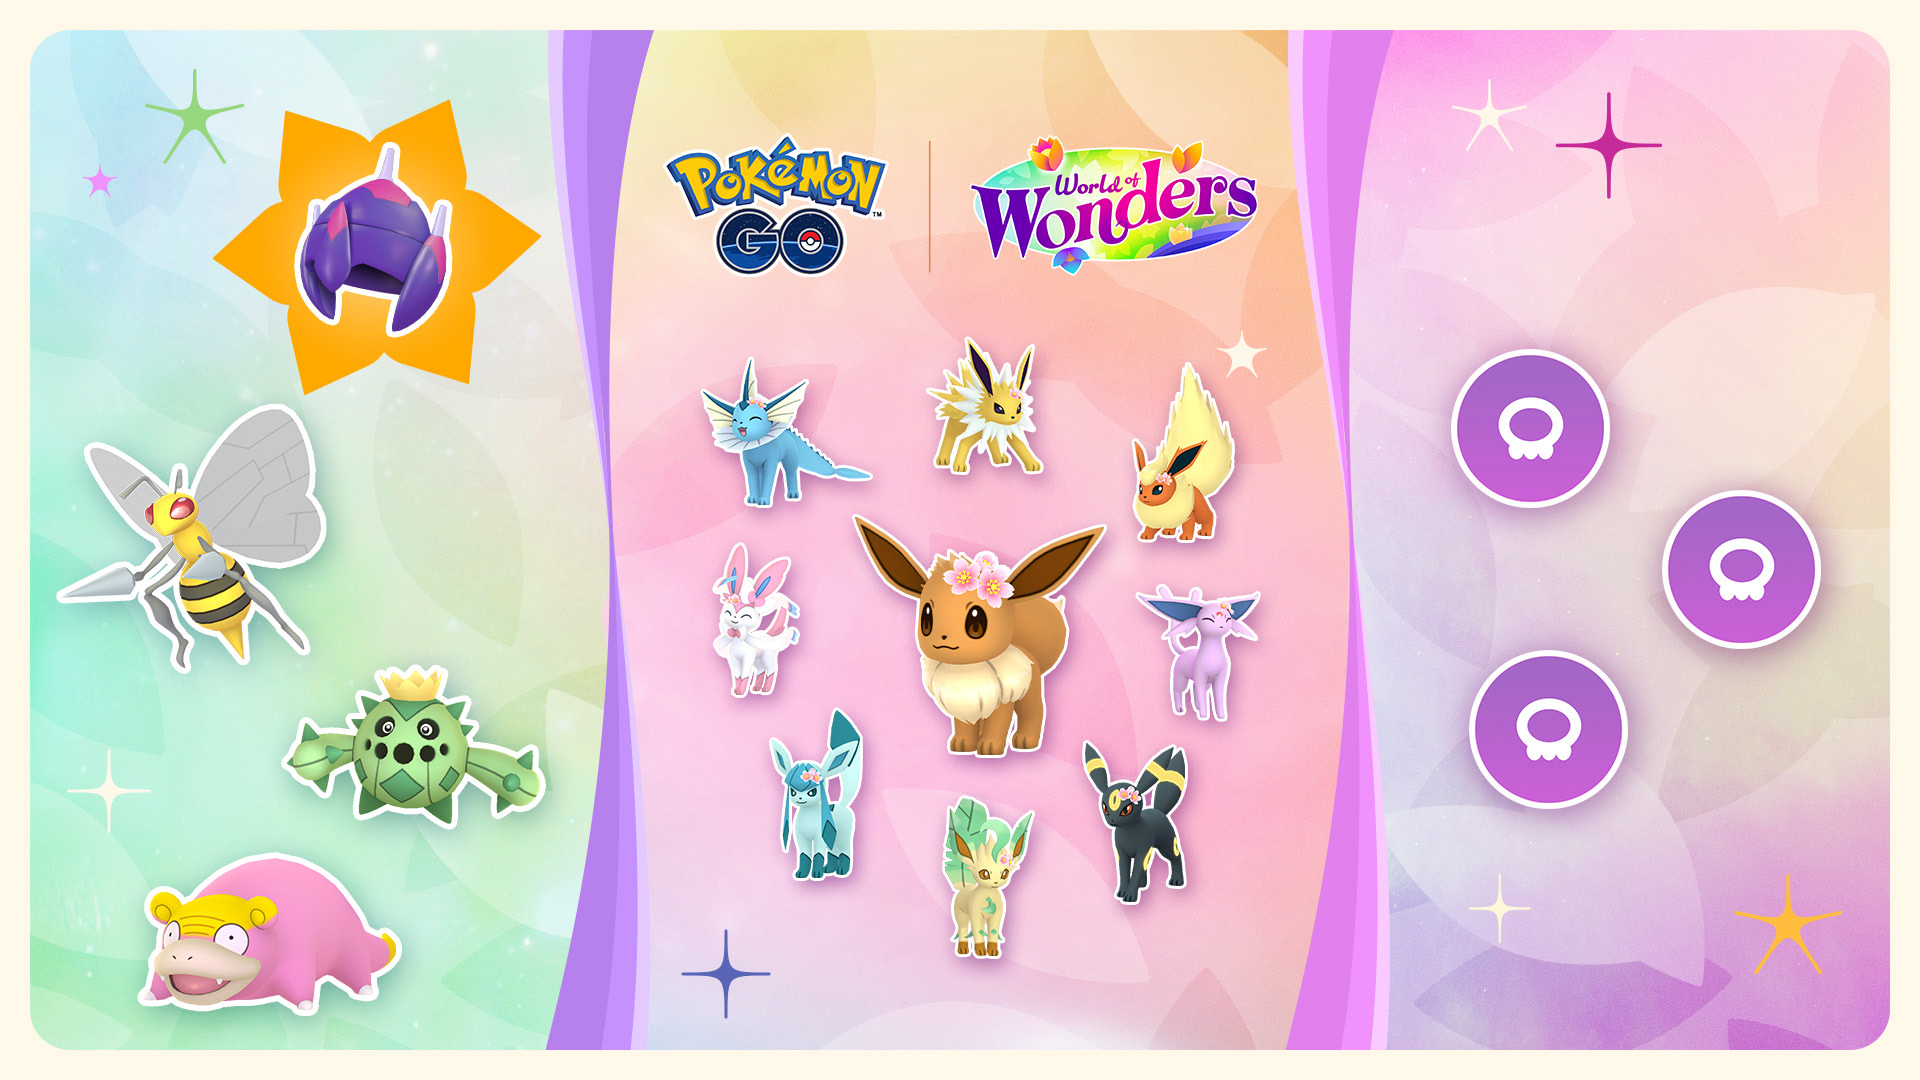 Die Reise voller Wunder geht weiter mit Teil 2 des Wundertickets – Erlebt Evoli und seine magischen Entwicklungen in Pokémon GO!